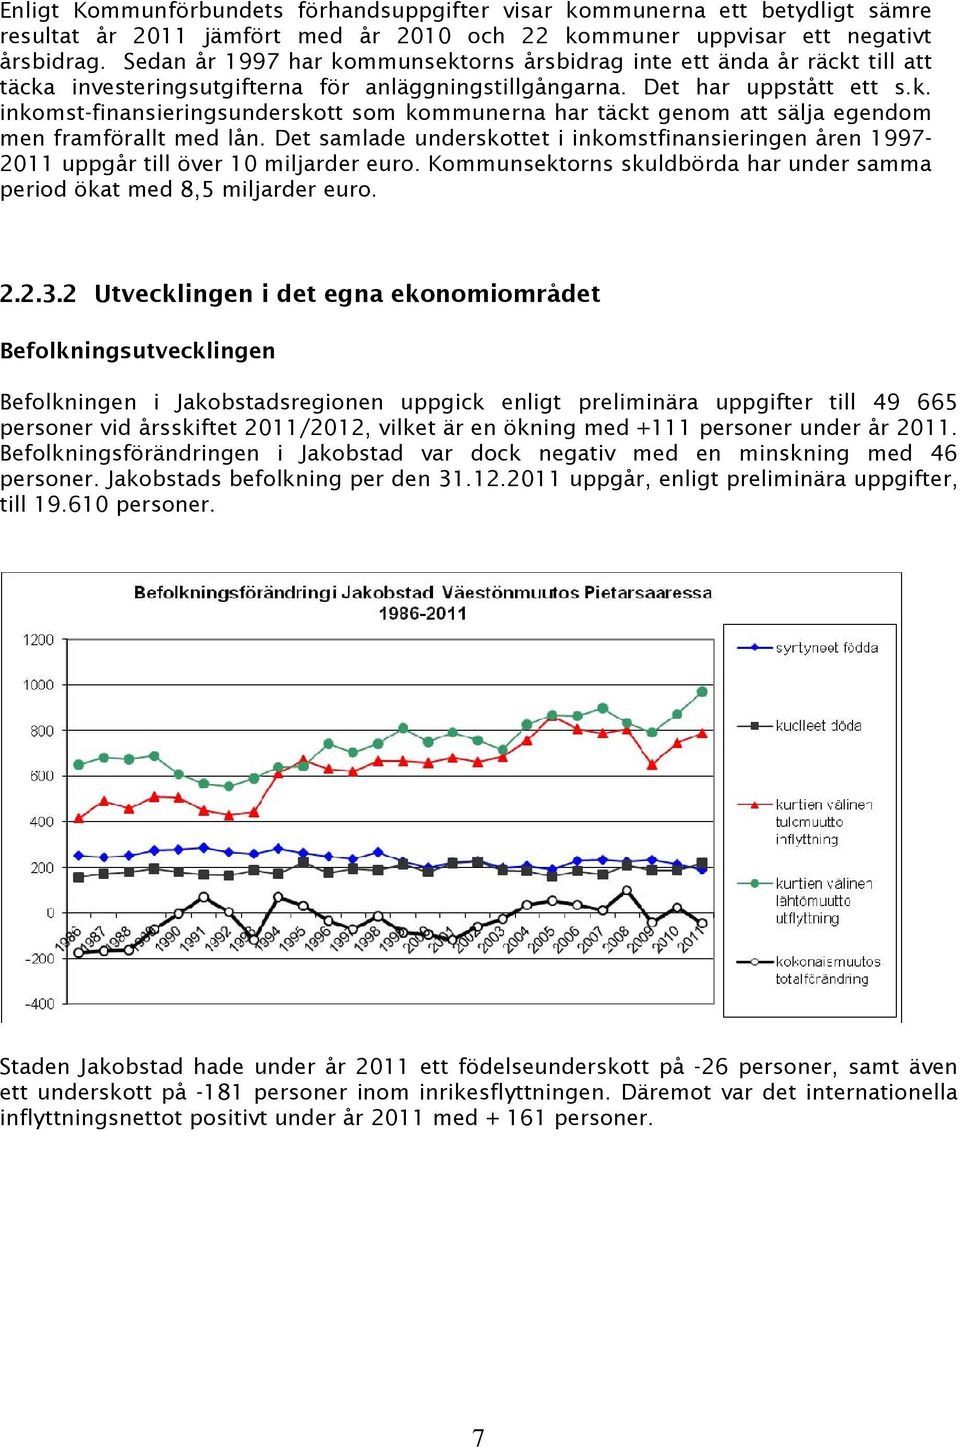 Det samlade underskottet i inkomstfinansieringen åren 1997-2011 uppgår till över 10 miljarder euro. Kommunsektorns skuldbörda har under samma period ökat med 8,5 miljarder euro. 2.2.3.